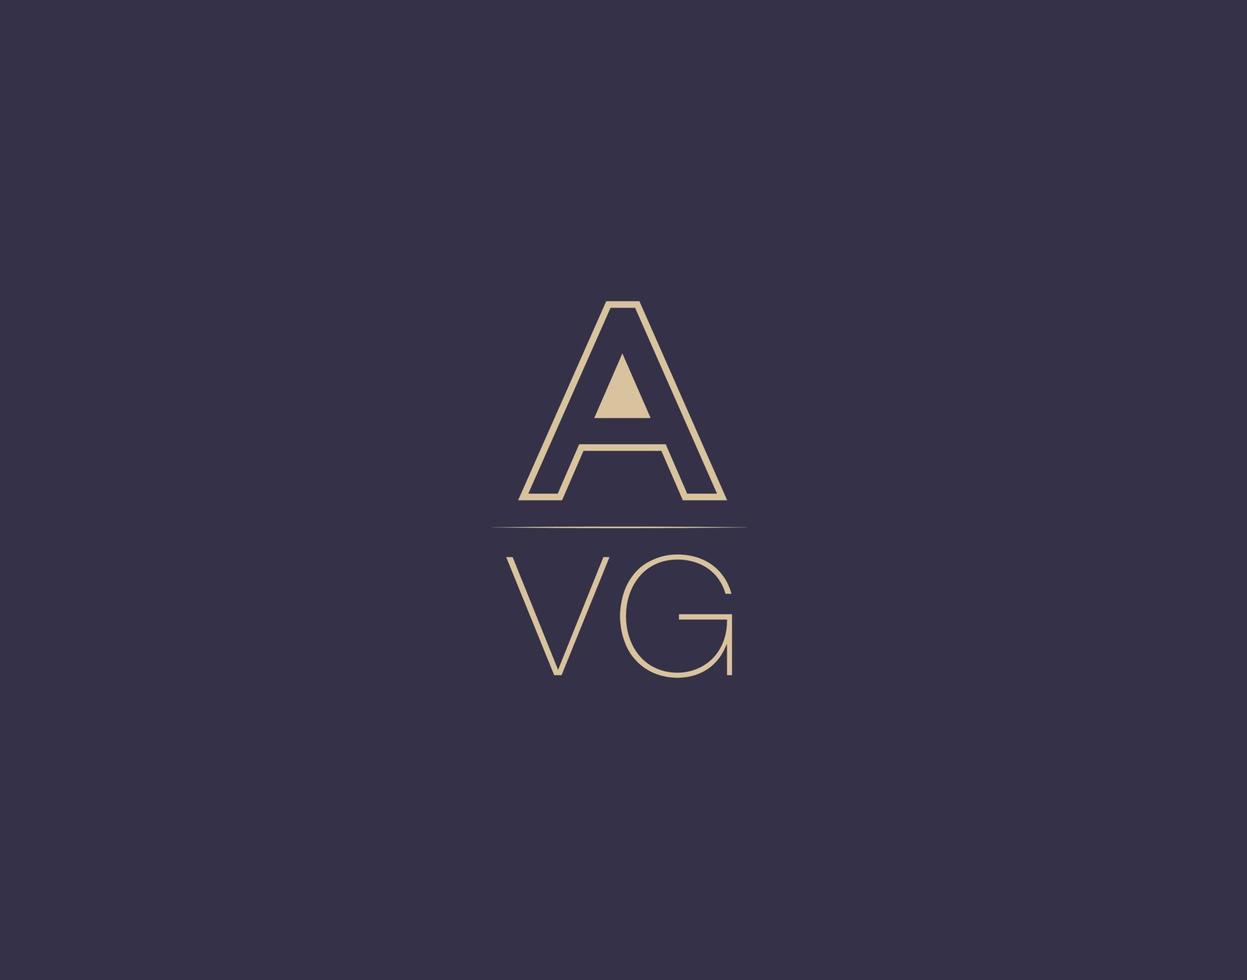 avg letter logo design moderne minimalistische vektorbilder vektor